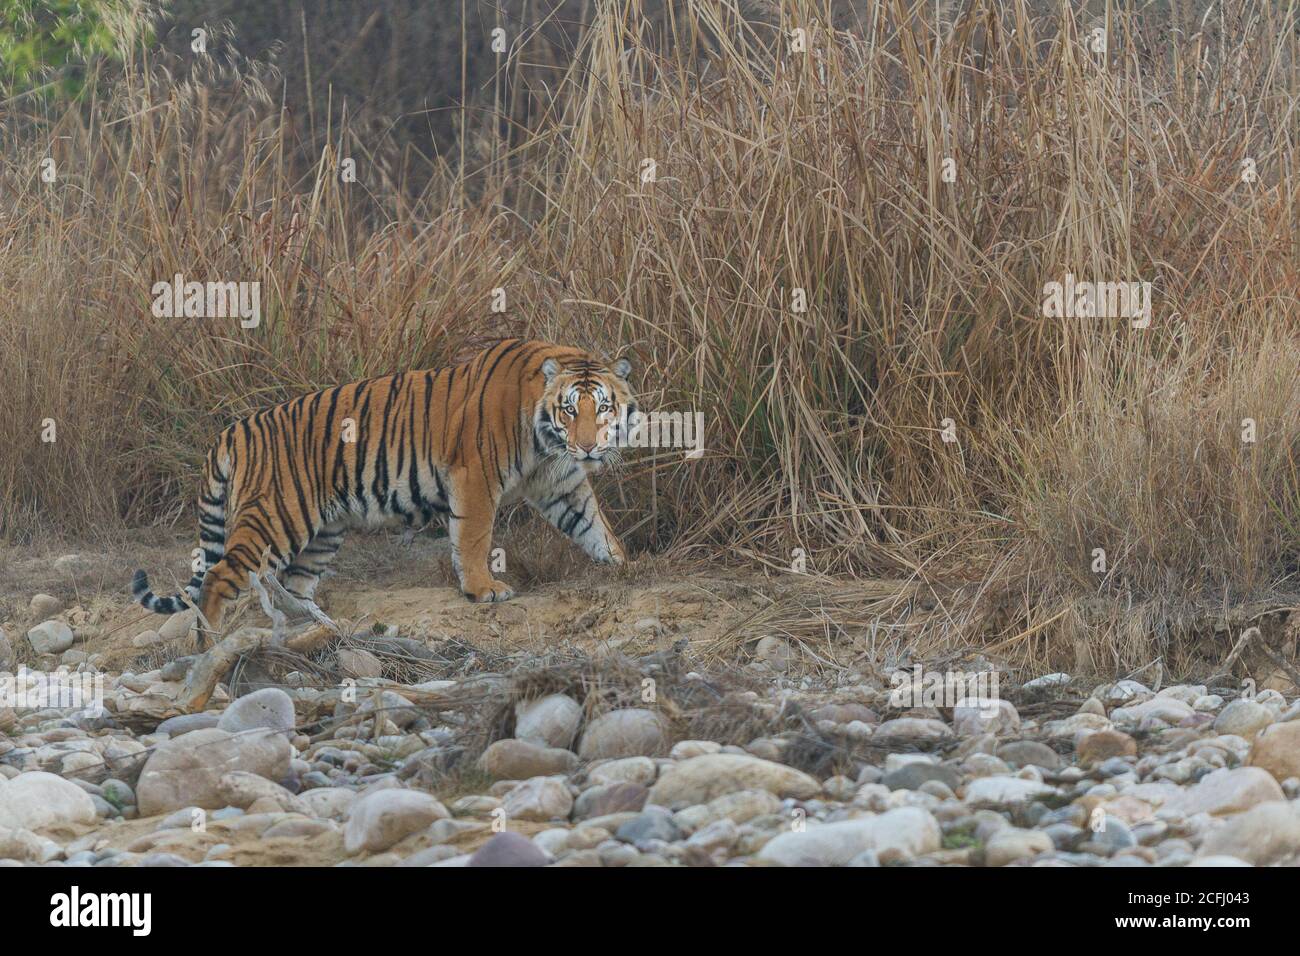 Der junge männliche Bengal Tiger steht und schaut, bevor er die hohen Gräser an einem kalten nebligen Wintermorgen im Corbett Tiger Reserve, Uttarakhand, Indien betritt Stockfoto